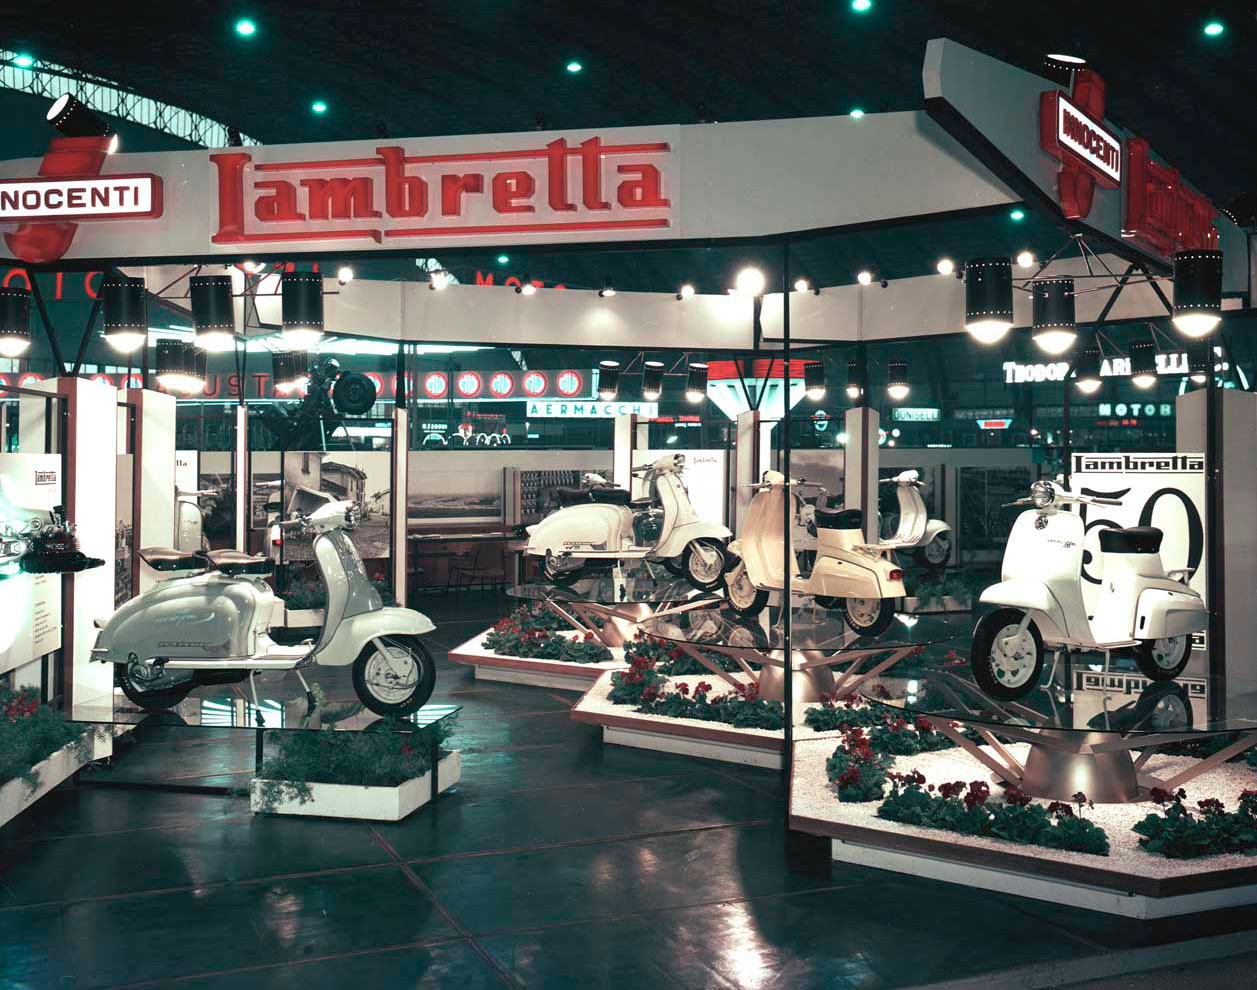 Stand Innocenti alla Mostra del ciclo e motociclo di Milano in cui è stata presentata la Lambretta 50 – 1961. Archivio fotografico Roberto Zabban